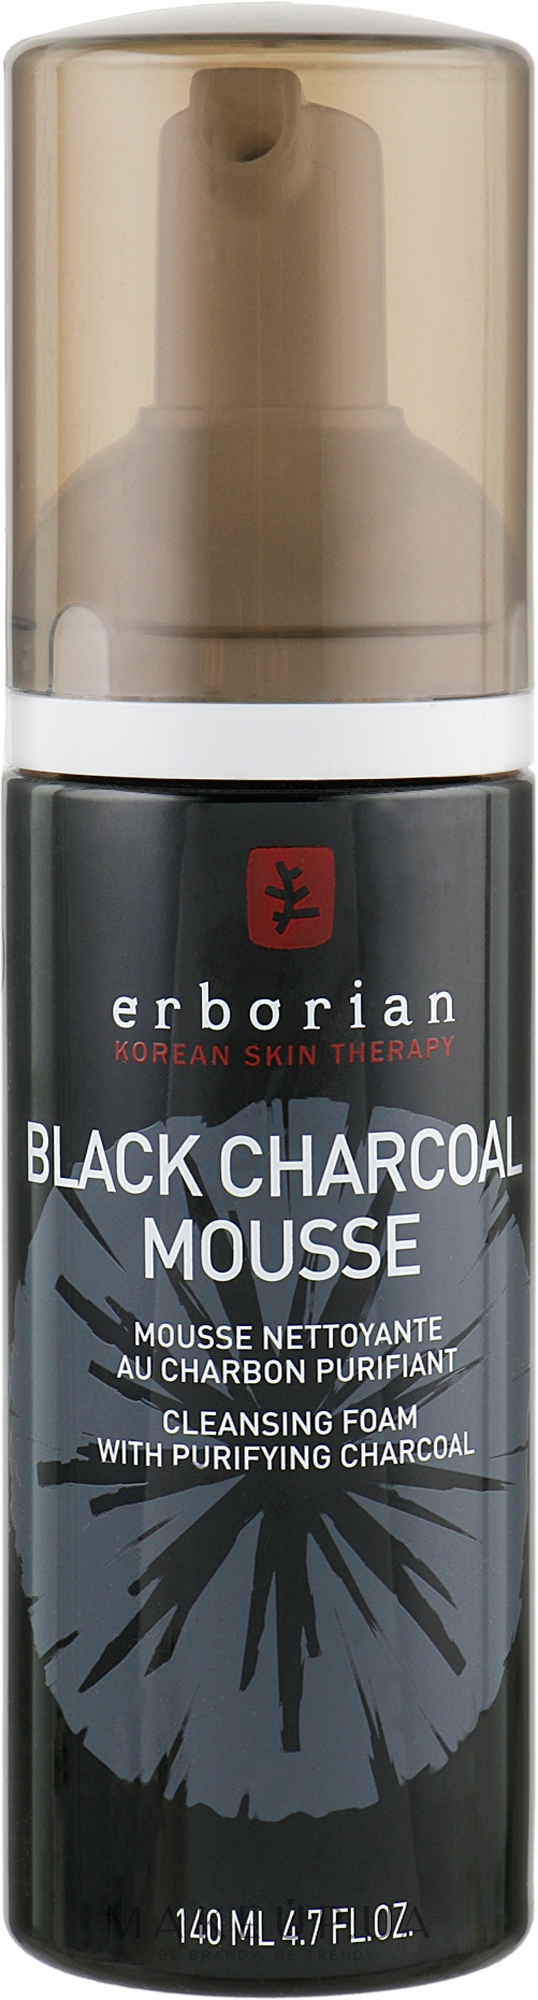 Пенка для очищения лица c древесным углем - Erborian Black Charcoal Mouse Cleansing Foam With Purifying Charcoal — фото 140ml